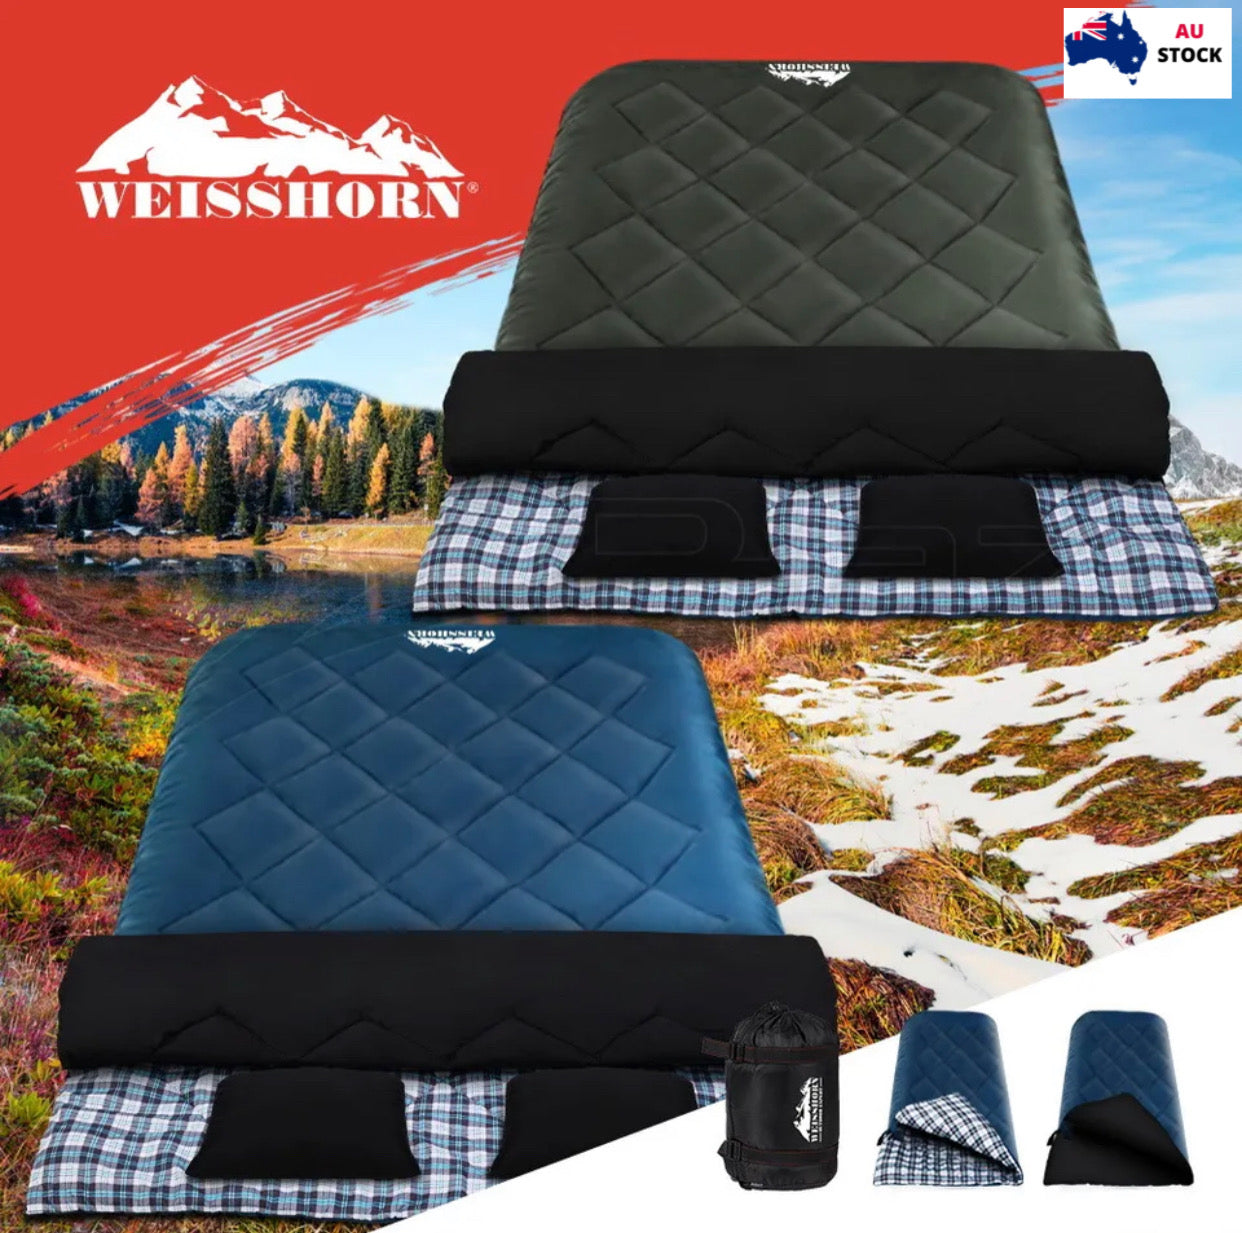 Weisshorn Sleeping Bag Double - jmscamping.com